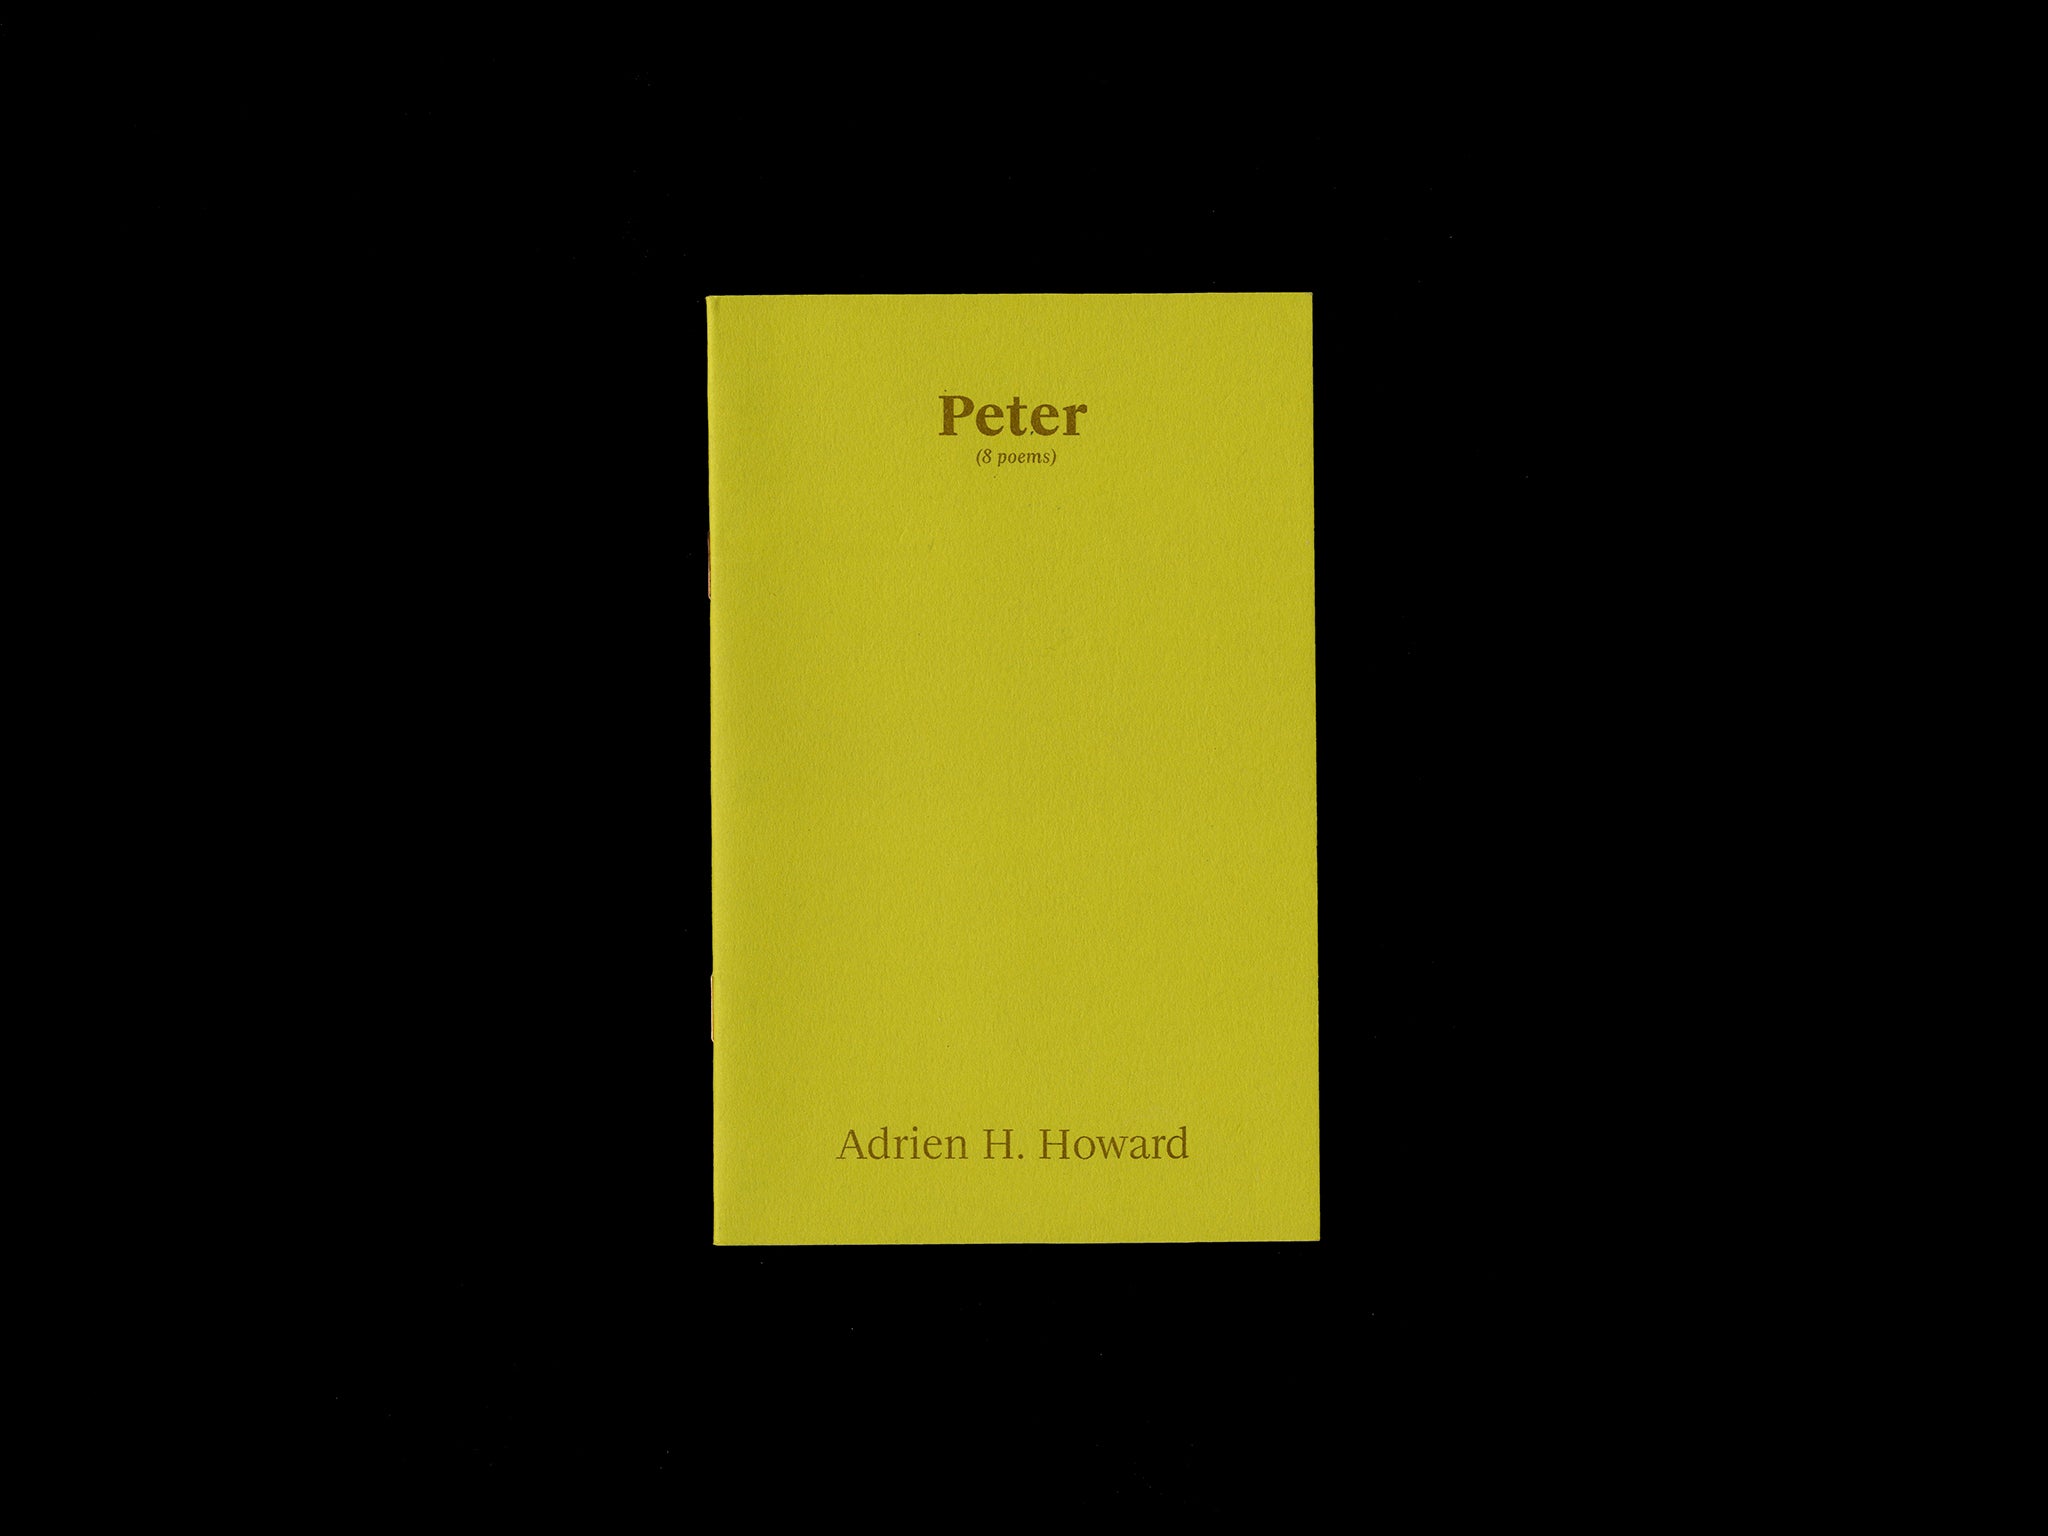 PETER (8 POEMS) by Adrien H. Howard